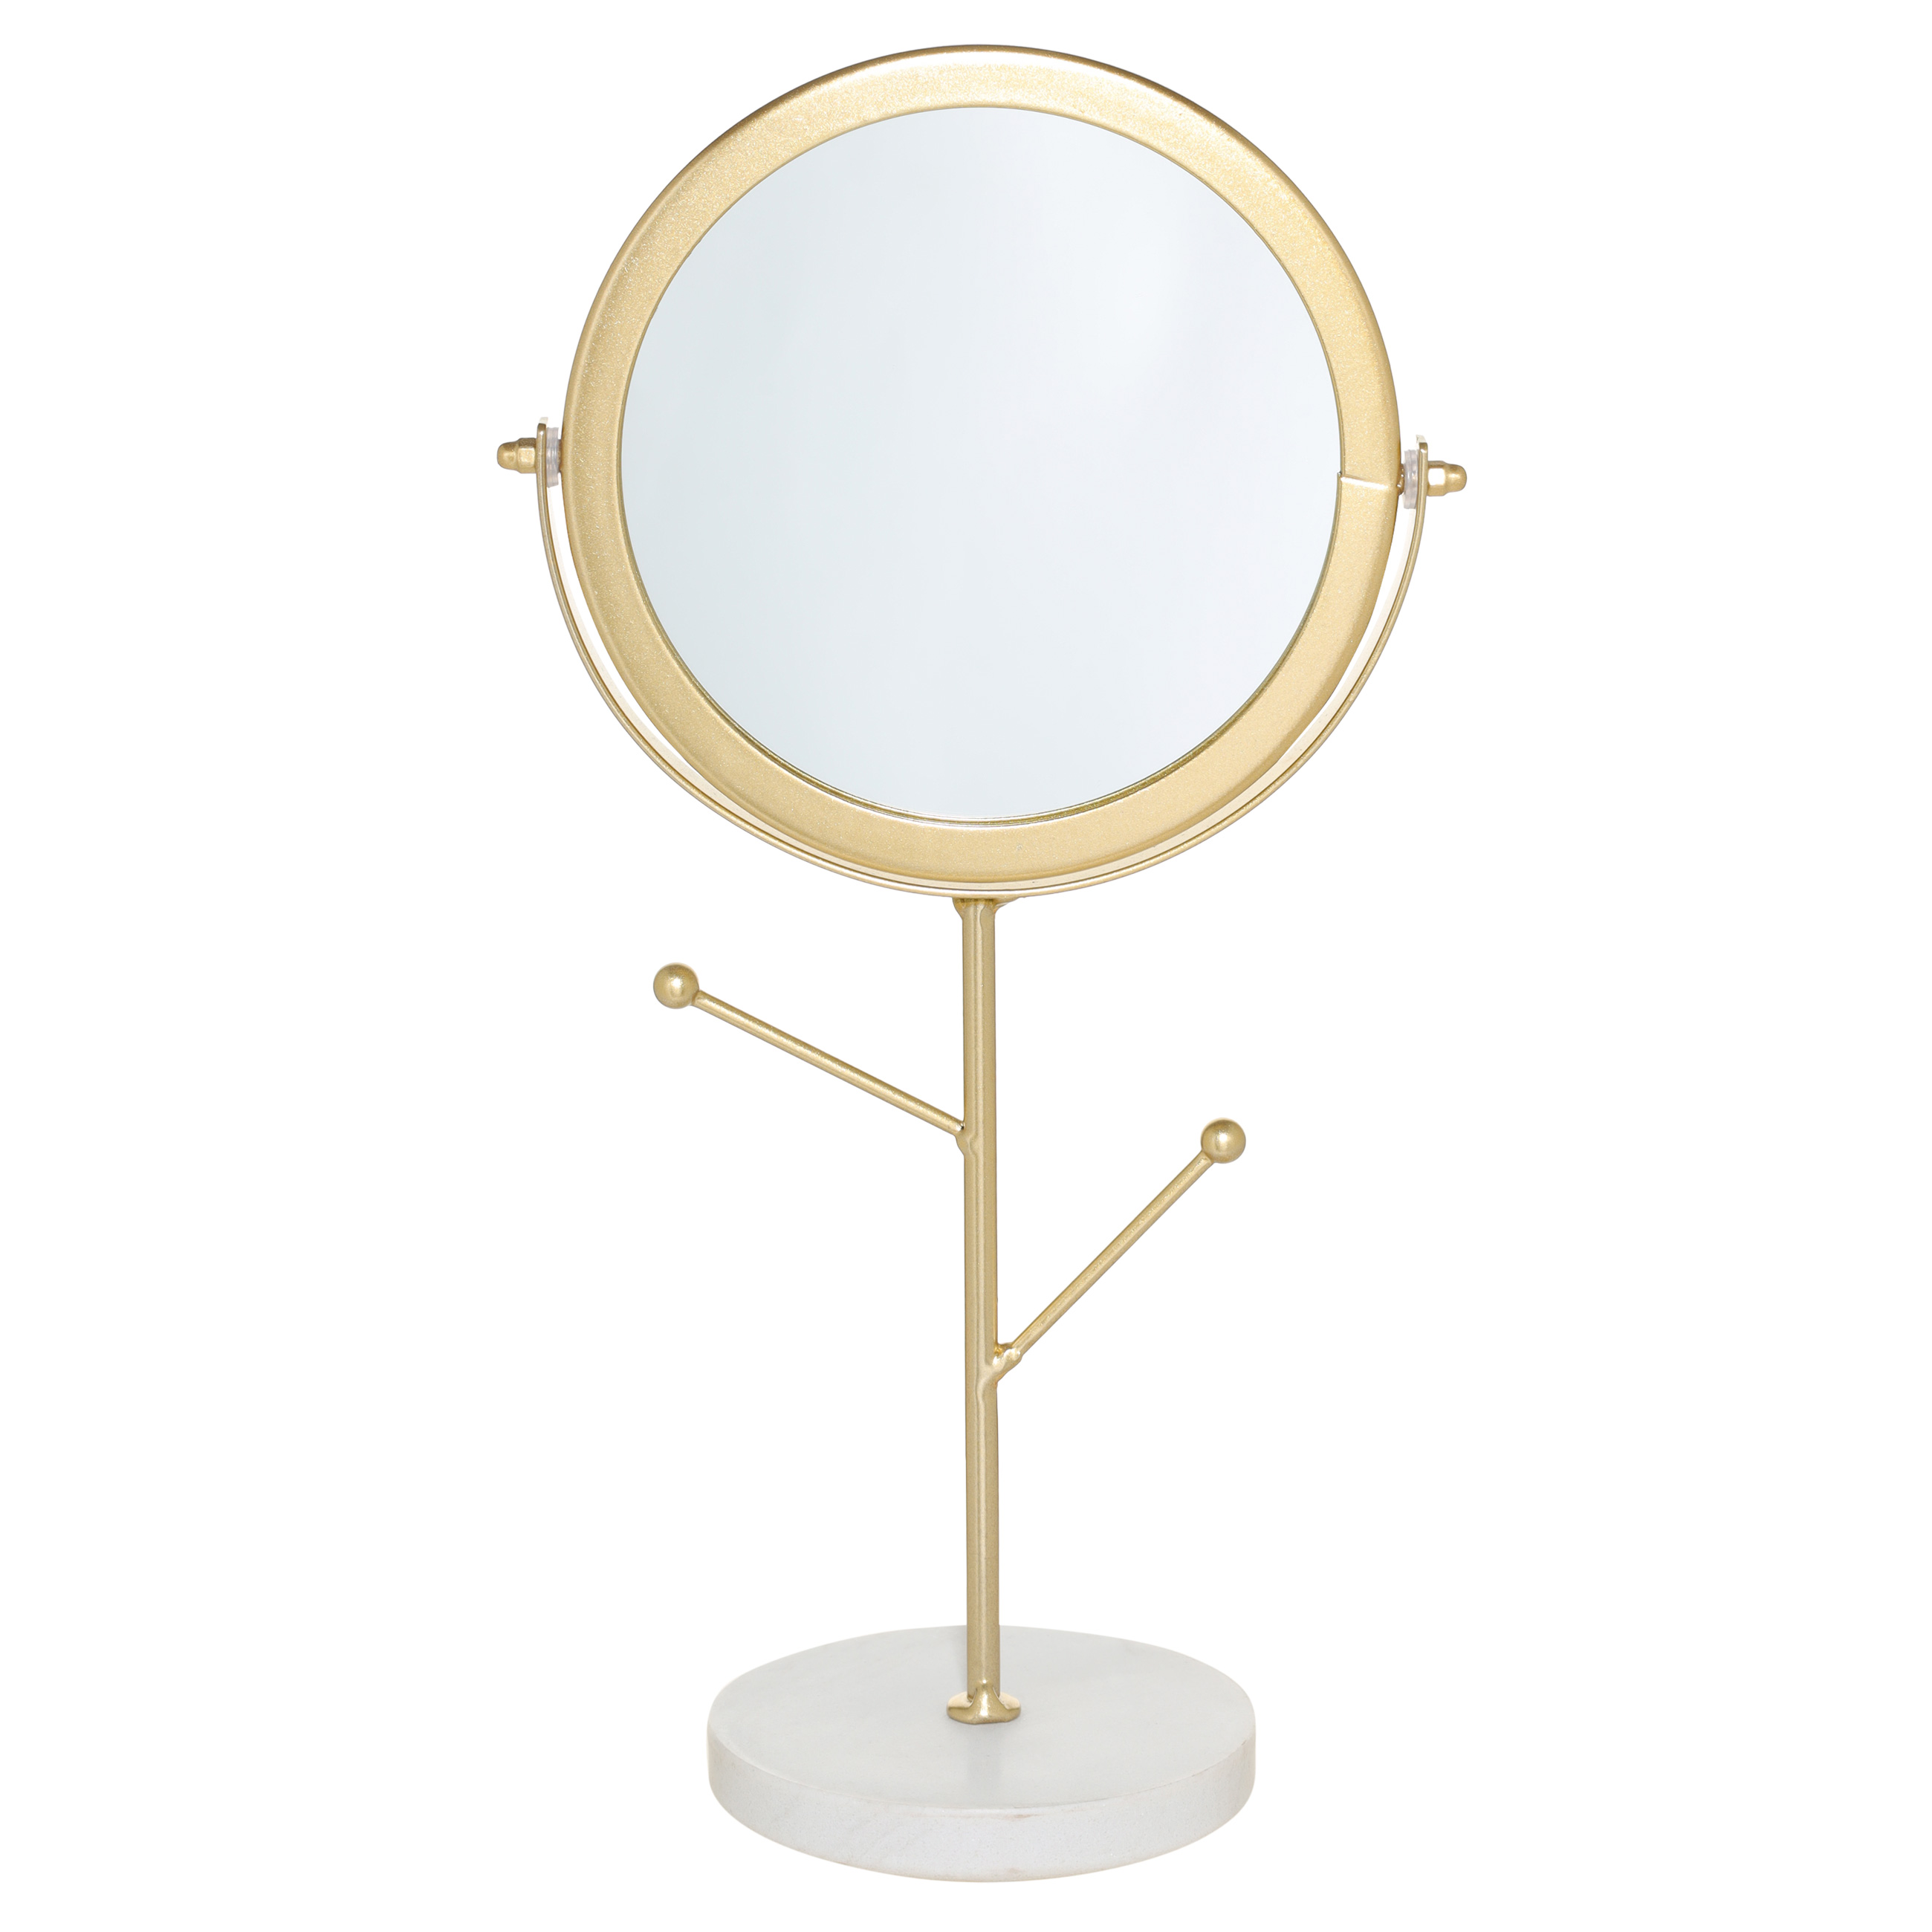 Зеркало настольное, 30 см, на ножке, с держателями для украшений, металл, золотистое, Maniera изображение № 2